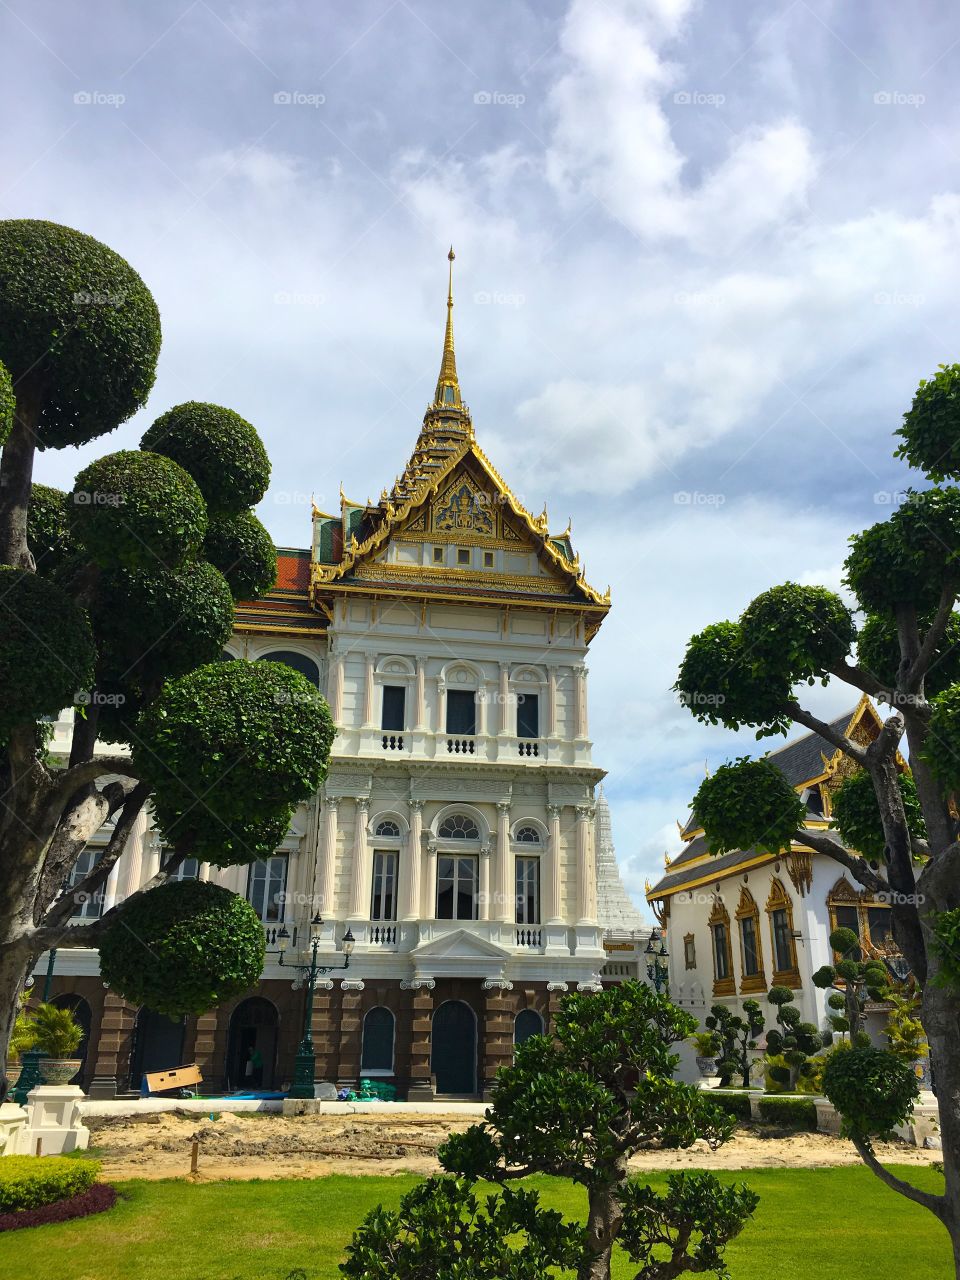 Grand Palace / Bangkok Thailand 95